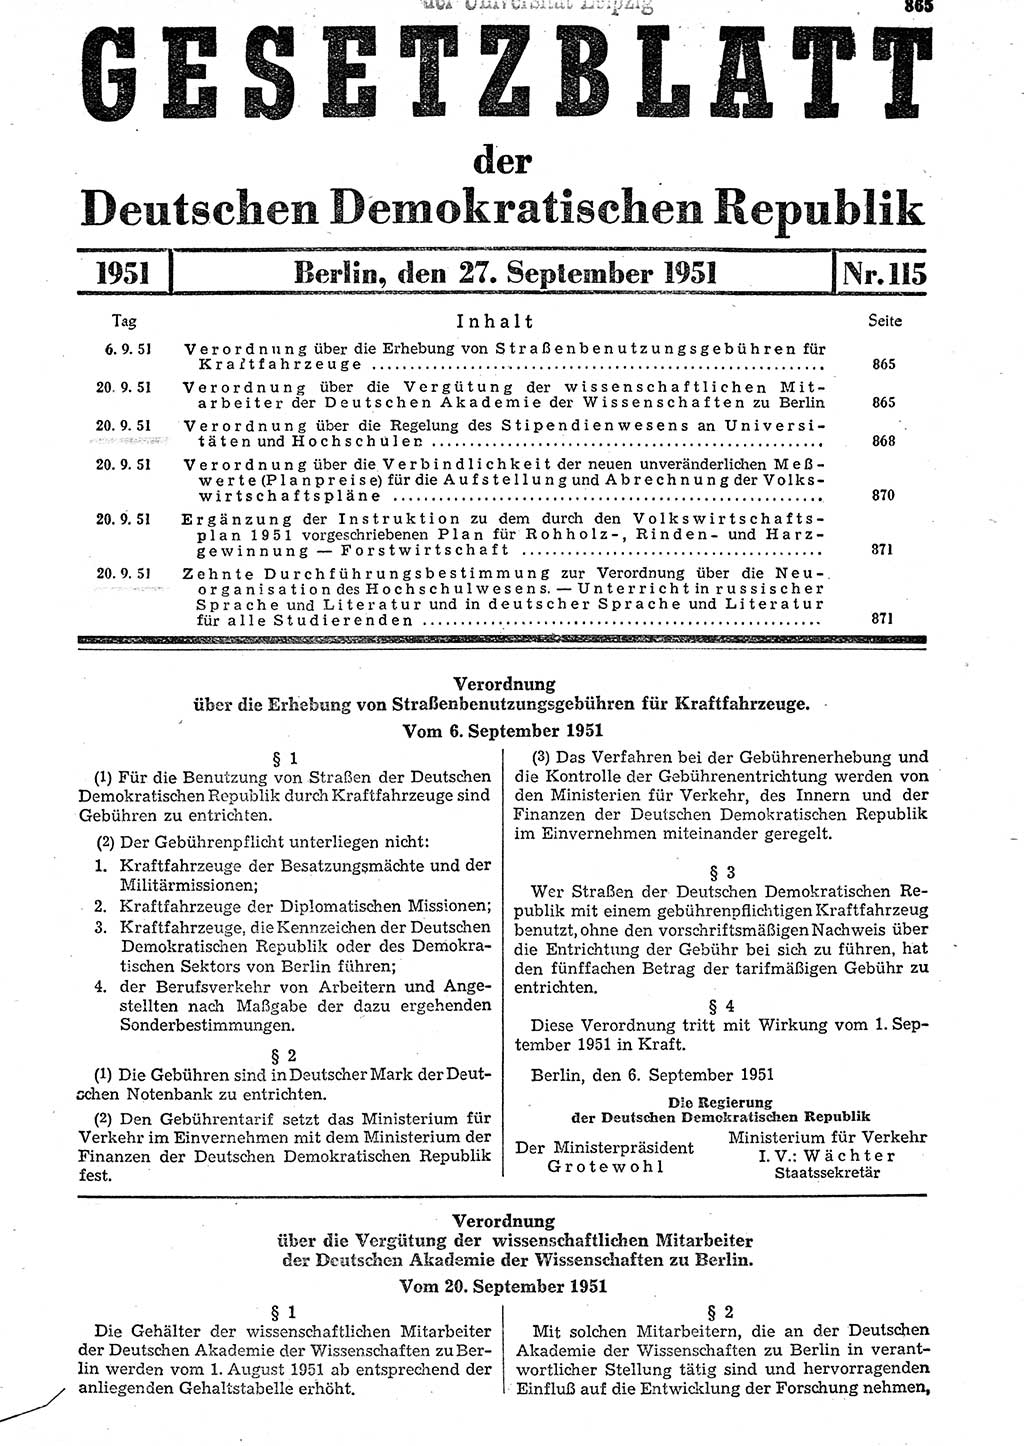 Gesetzblatt (GBl.) der Deutschen Demokratischen Republik (DDR) 1951, Seite 865 (GBl. DDR 1951, S. 865)